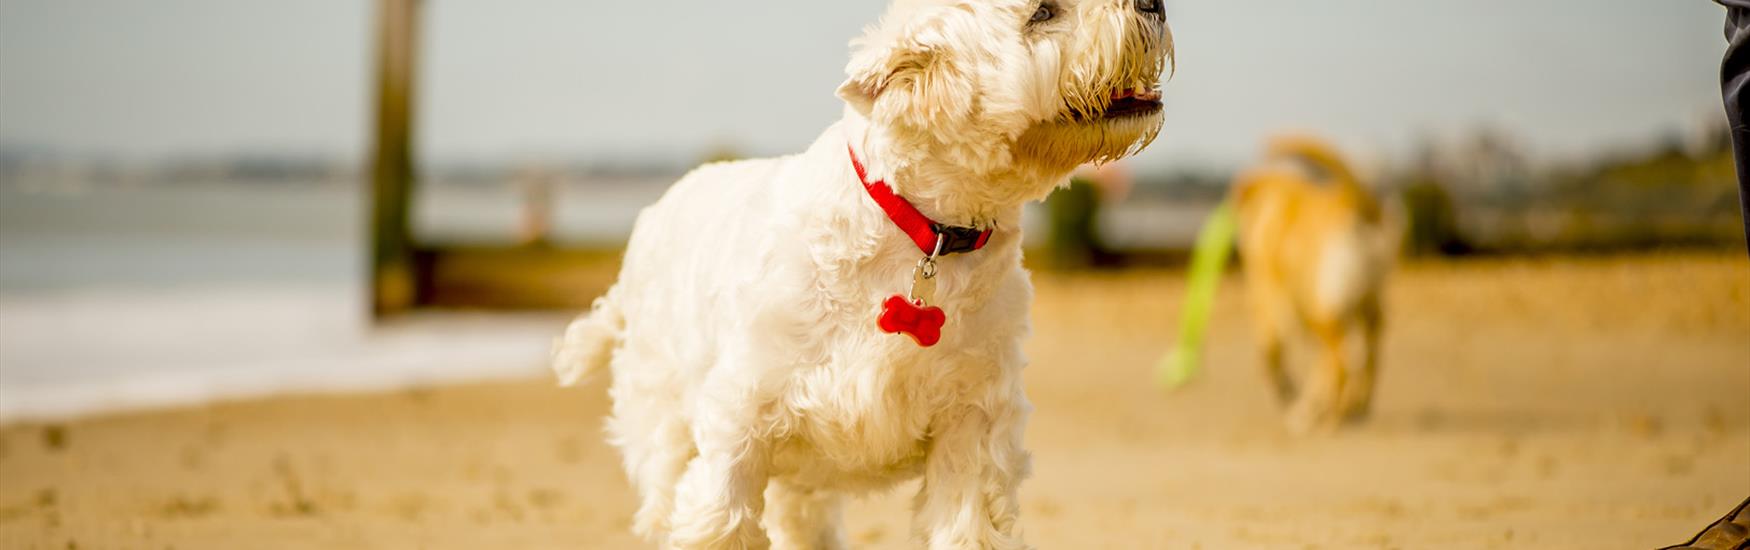 White scotty dog walking along bournemouth beach